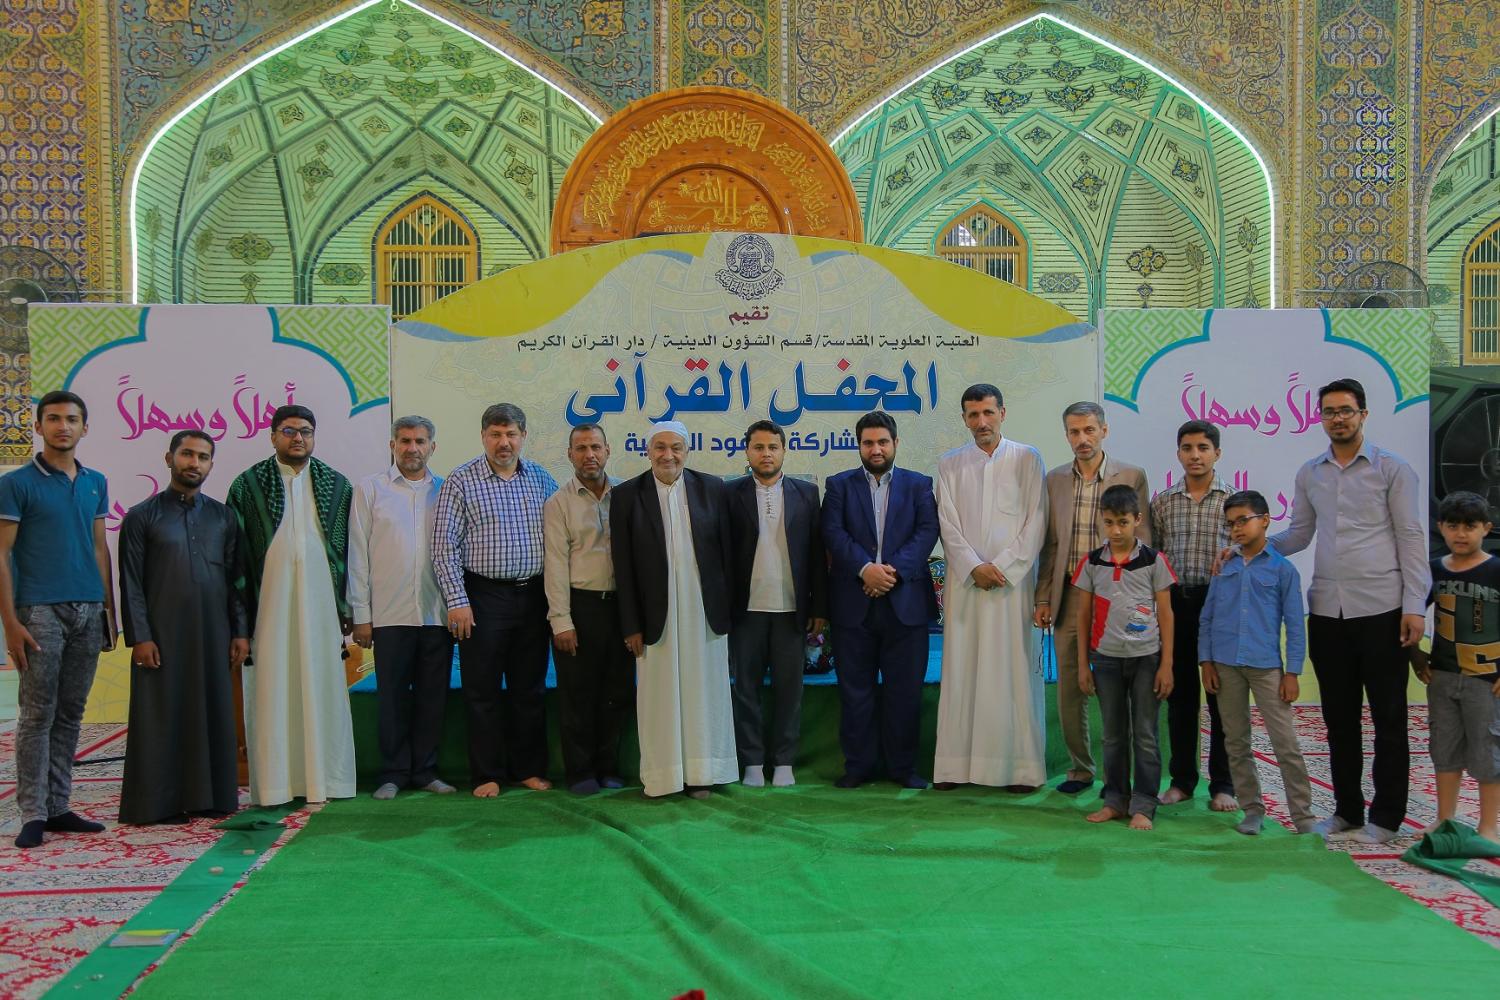 المحفل القرآني باستضافة دار باقر العلوم القرآنية من المحمرة في ايران | 2017